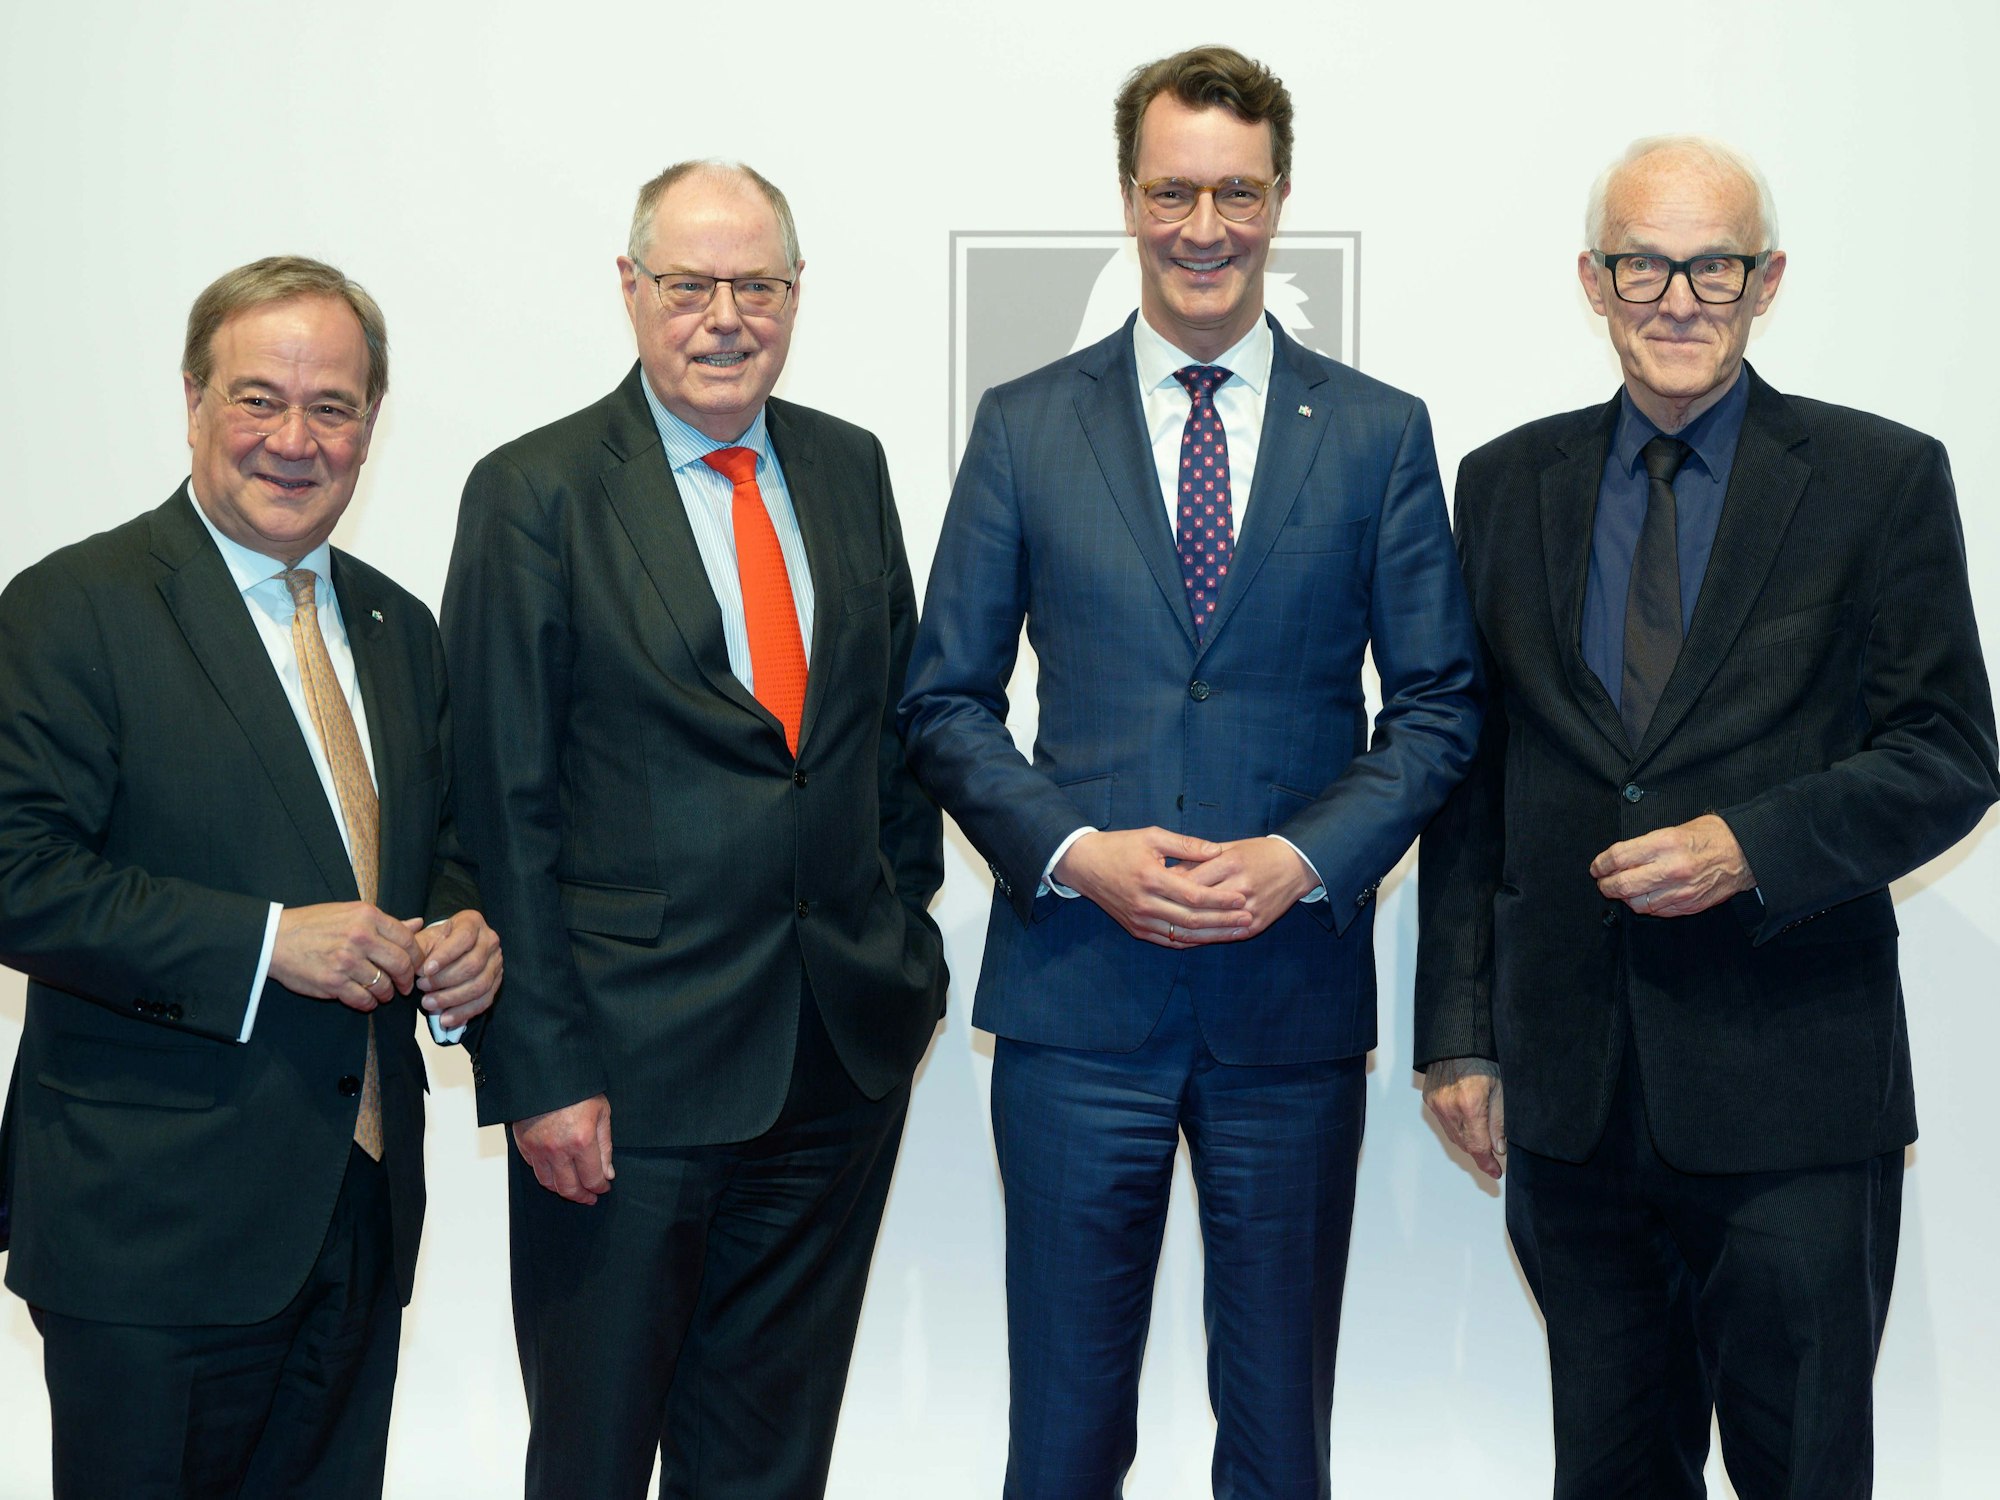 Die ehemaligen Ministerpräsidenten von Nordrhein-Westfalen Armin Laschet (CDU) und Peer Steinbrück (r), der Amtierende Ministerpräsident Hendrik Wüst (CDU) und der ehemalige Ministerpräsident Jürgen Rüttgers stehen vor der Verleihung des NRW-Staatspreises vor einer Fotowand.